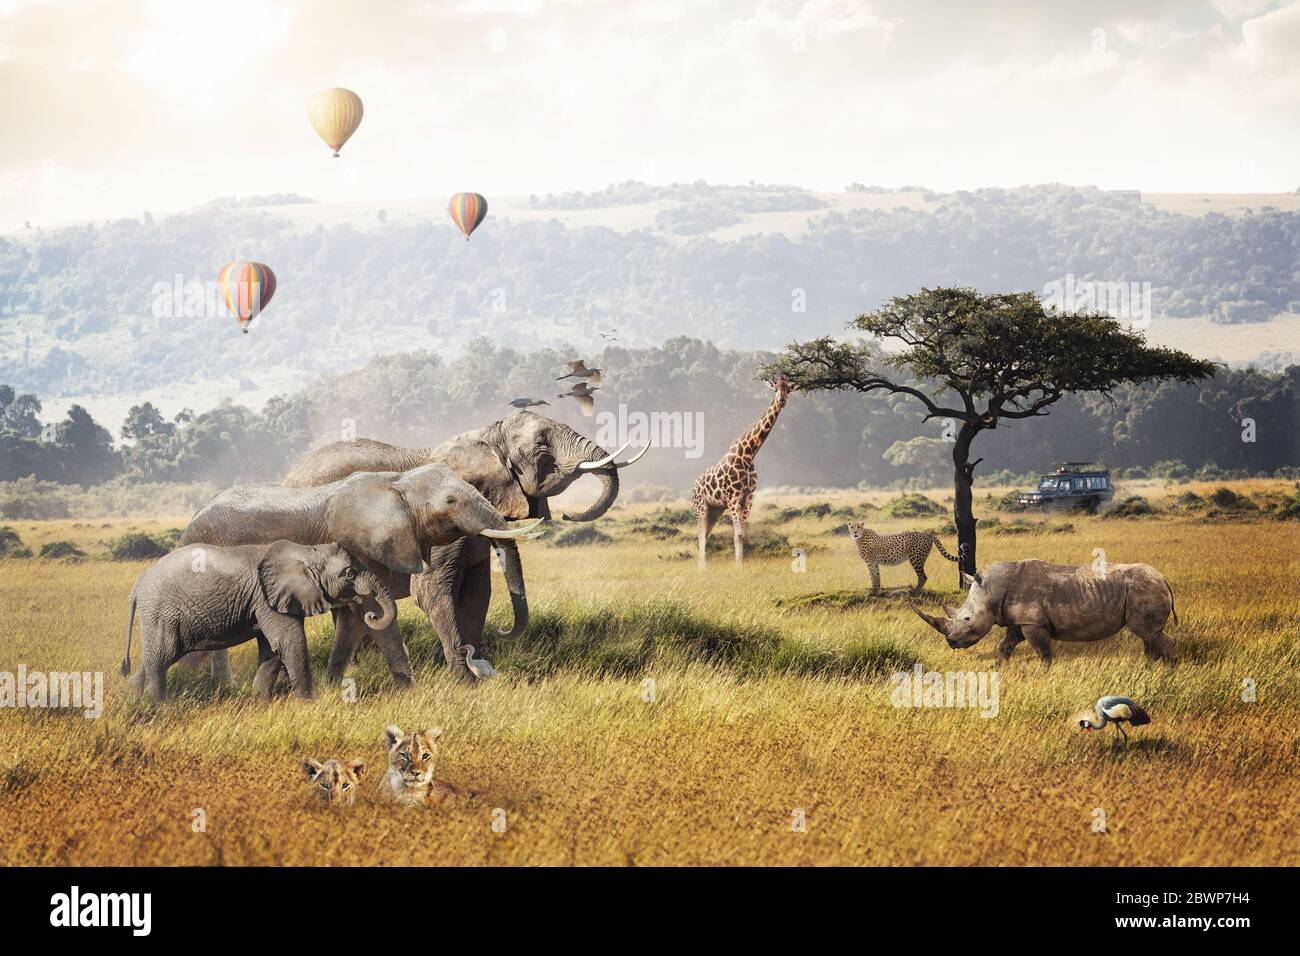 Kenya Africa safari sogno viaggio scena con animali selvatici insieme in un campo di prateria con aerostati caldi e game drive veicolo turistico. Foto Stock